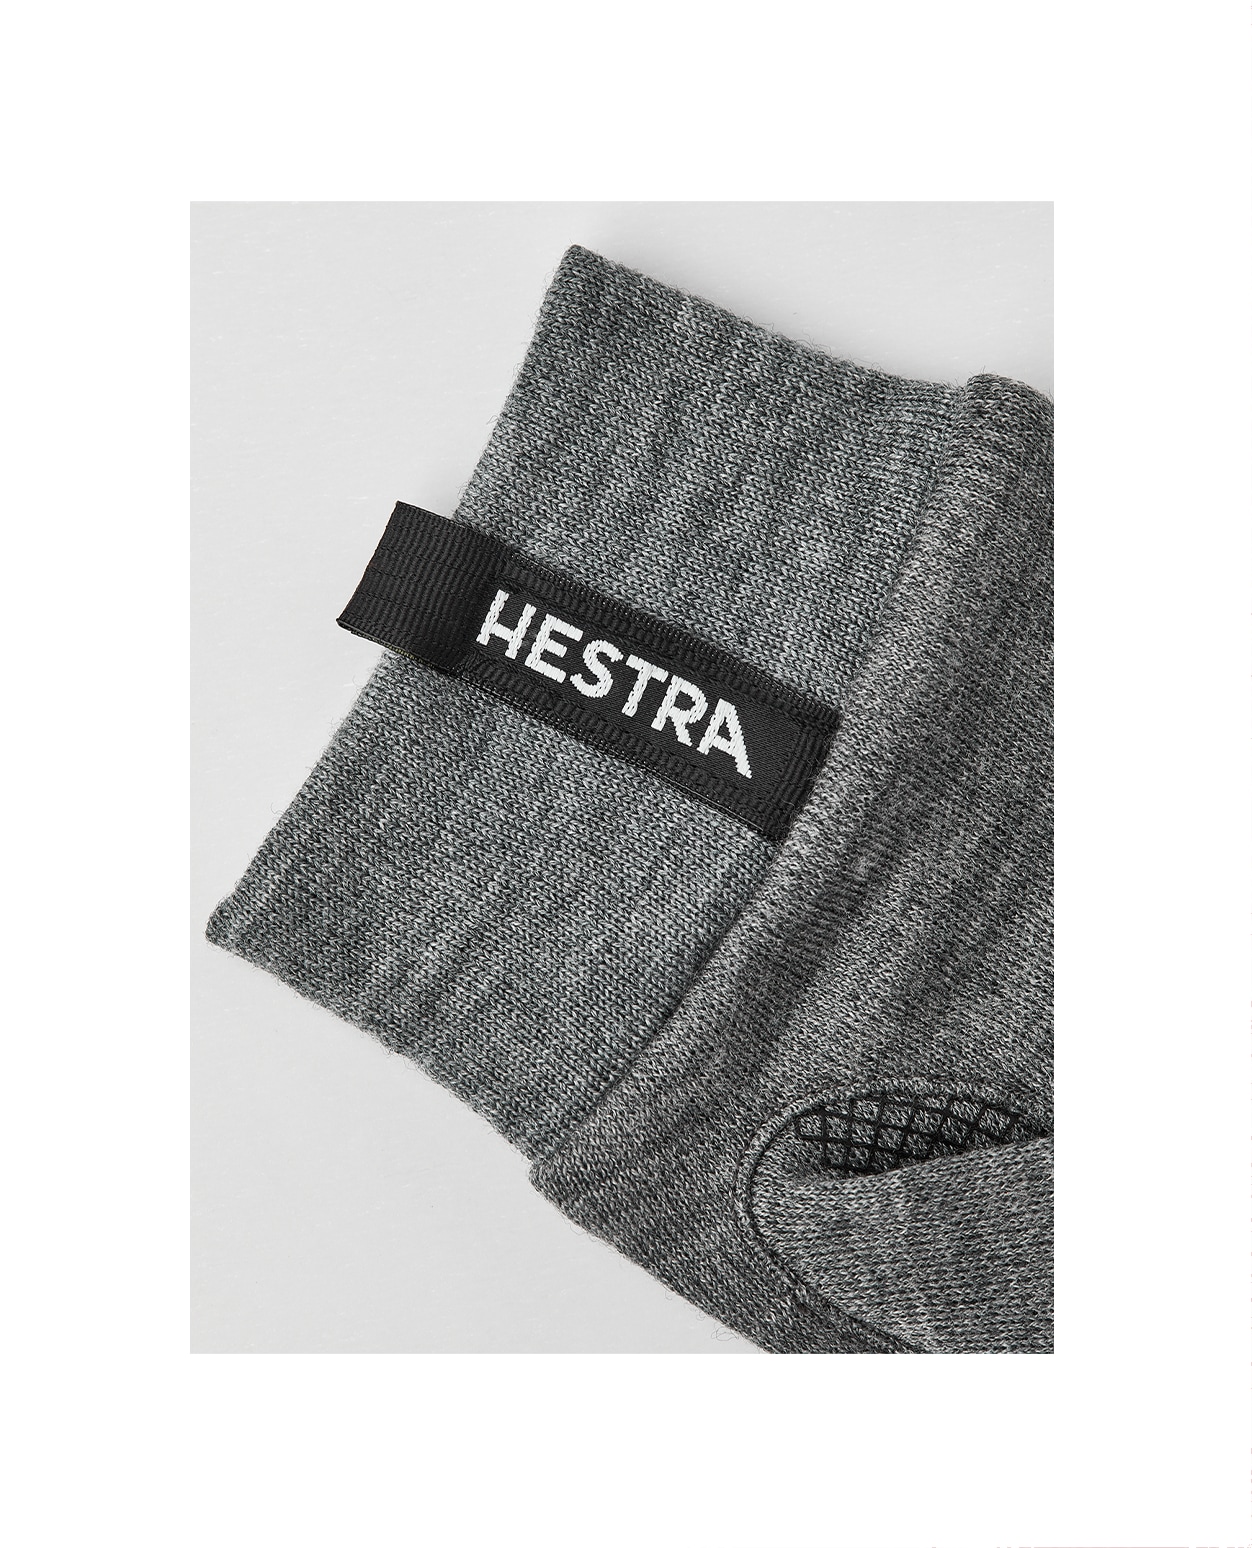 Hestra Merino Touch Point Grey